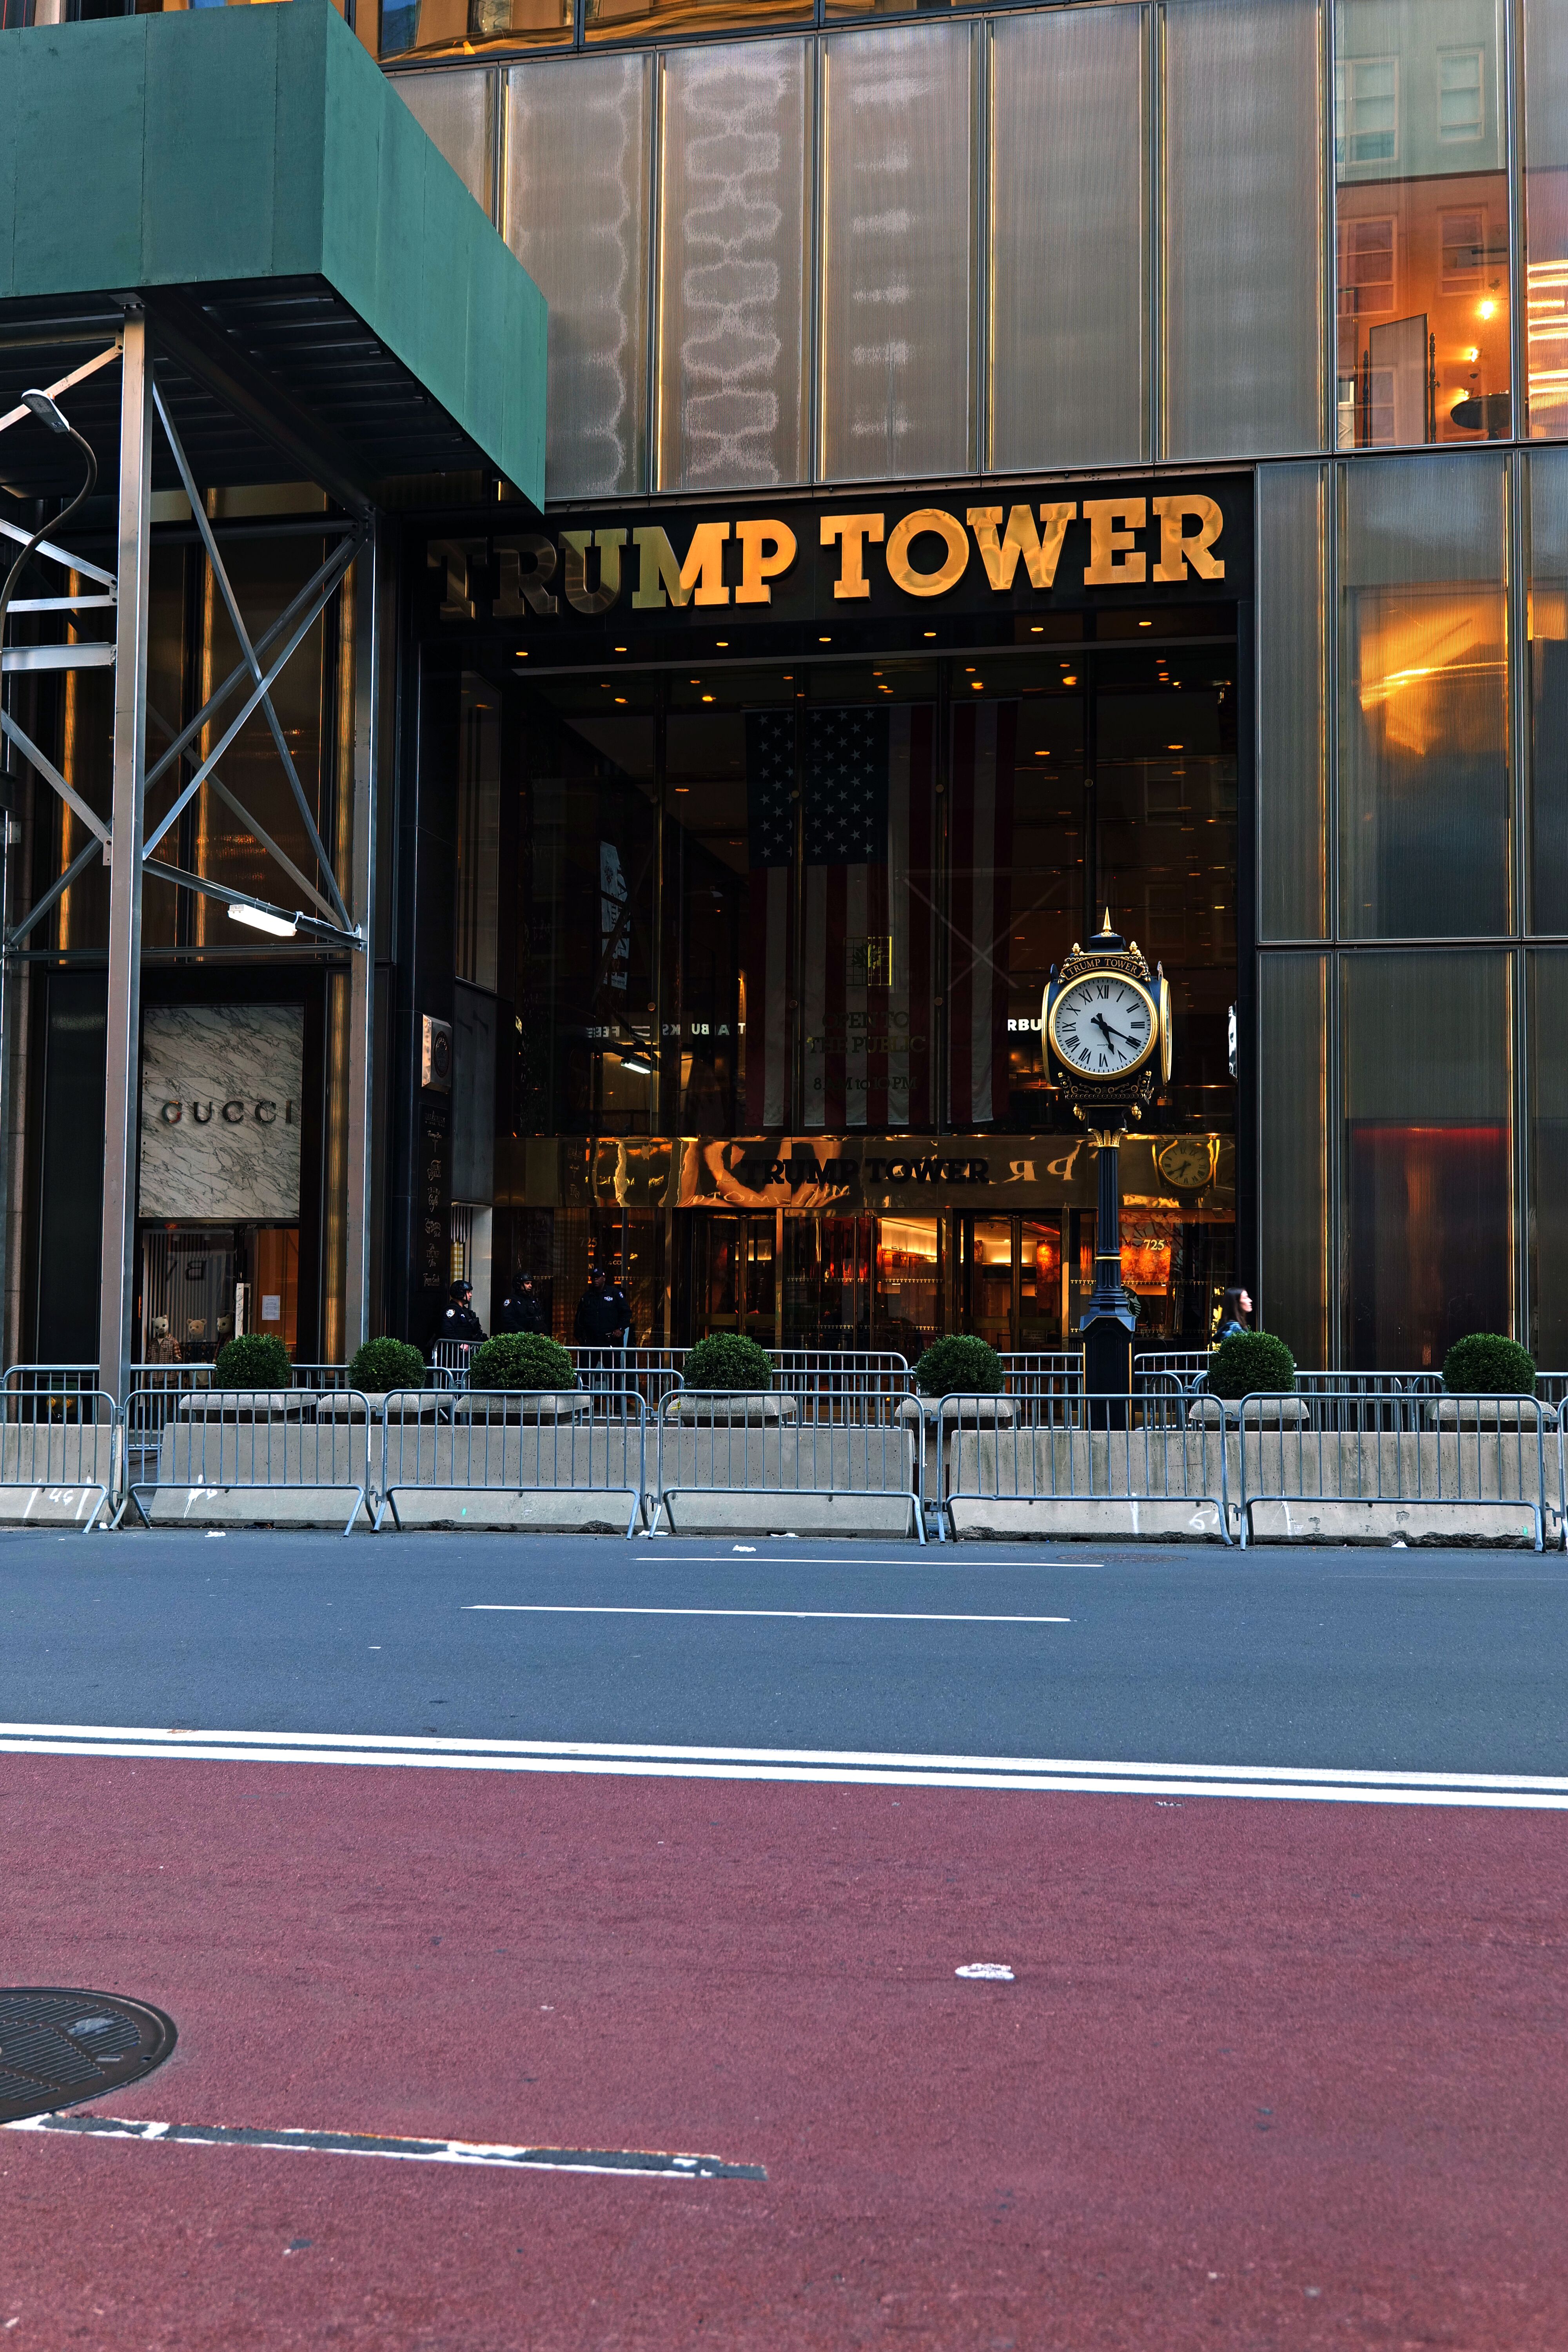 Dennis Trump Tower